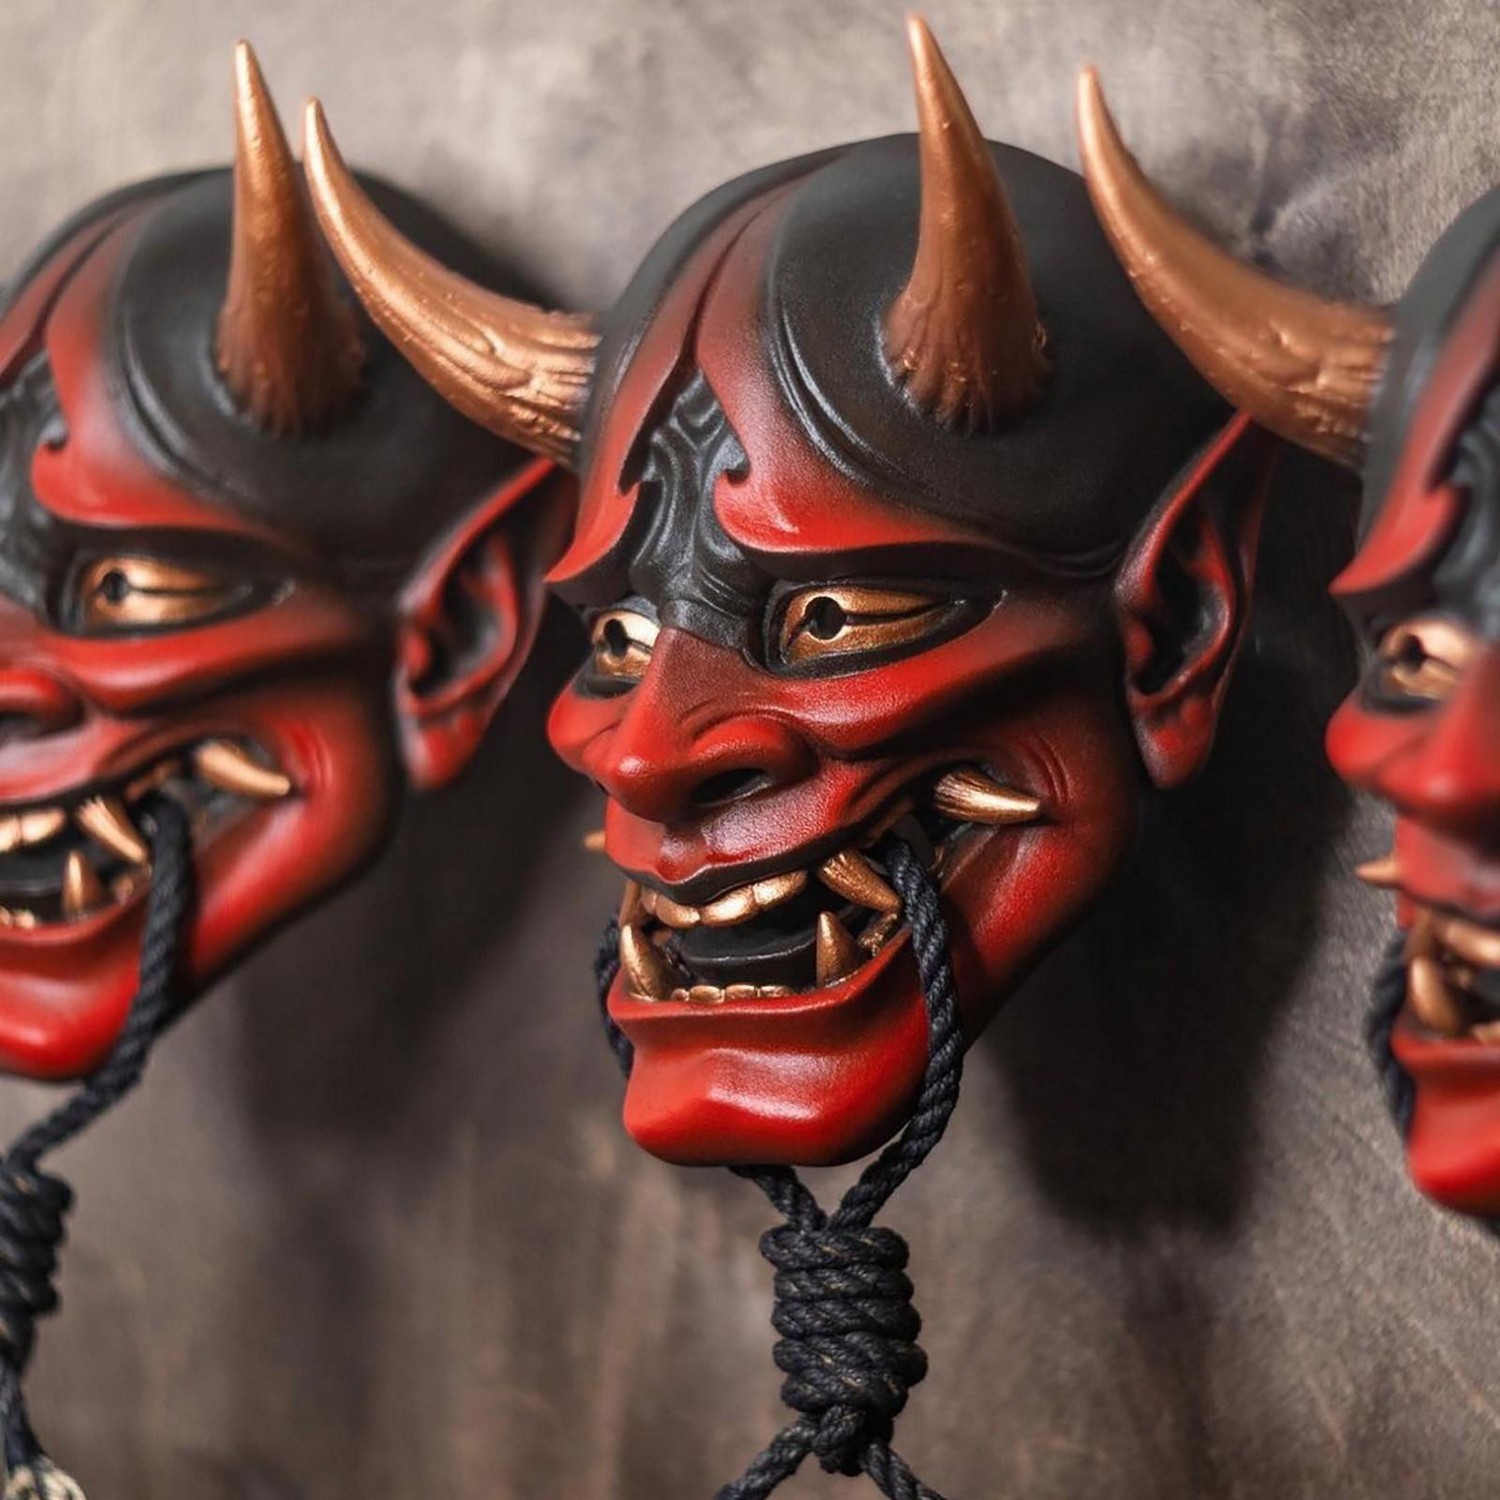 Mască cu cap de demon pentru Halloween - motiv japonez